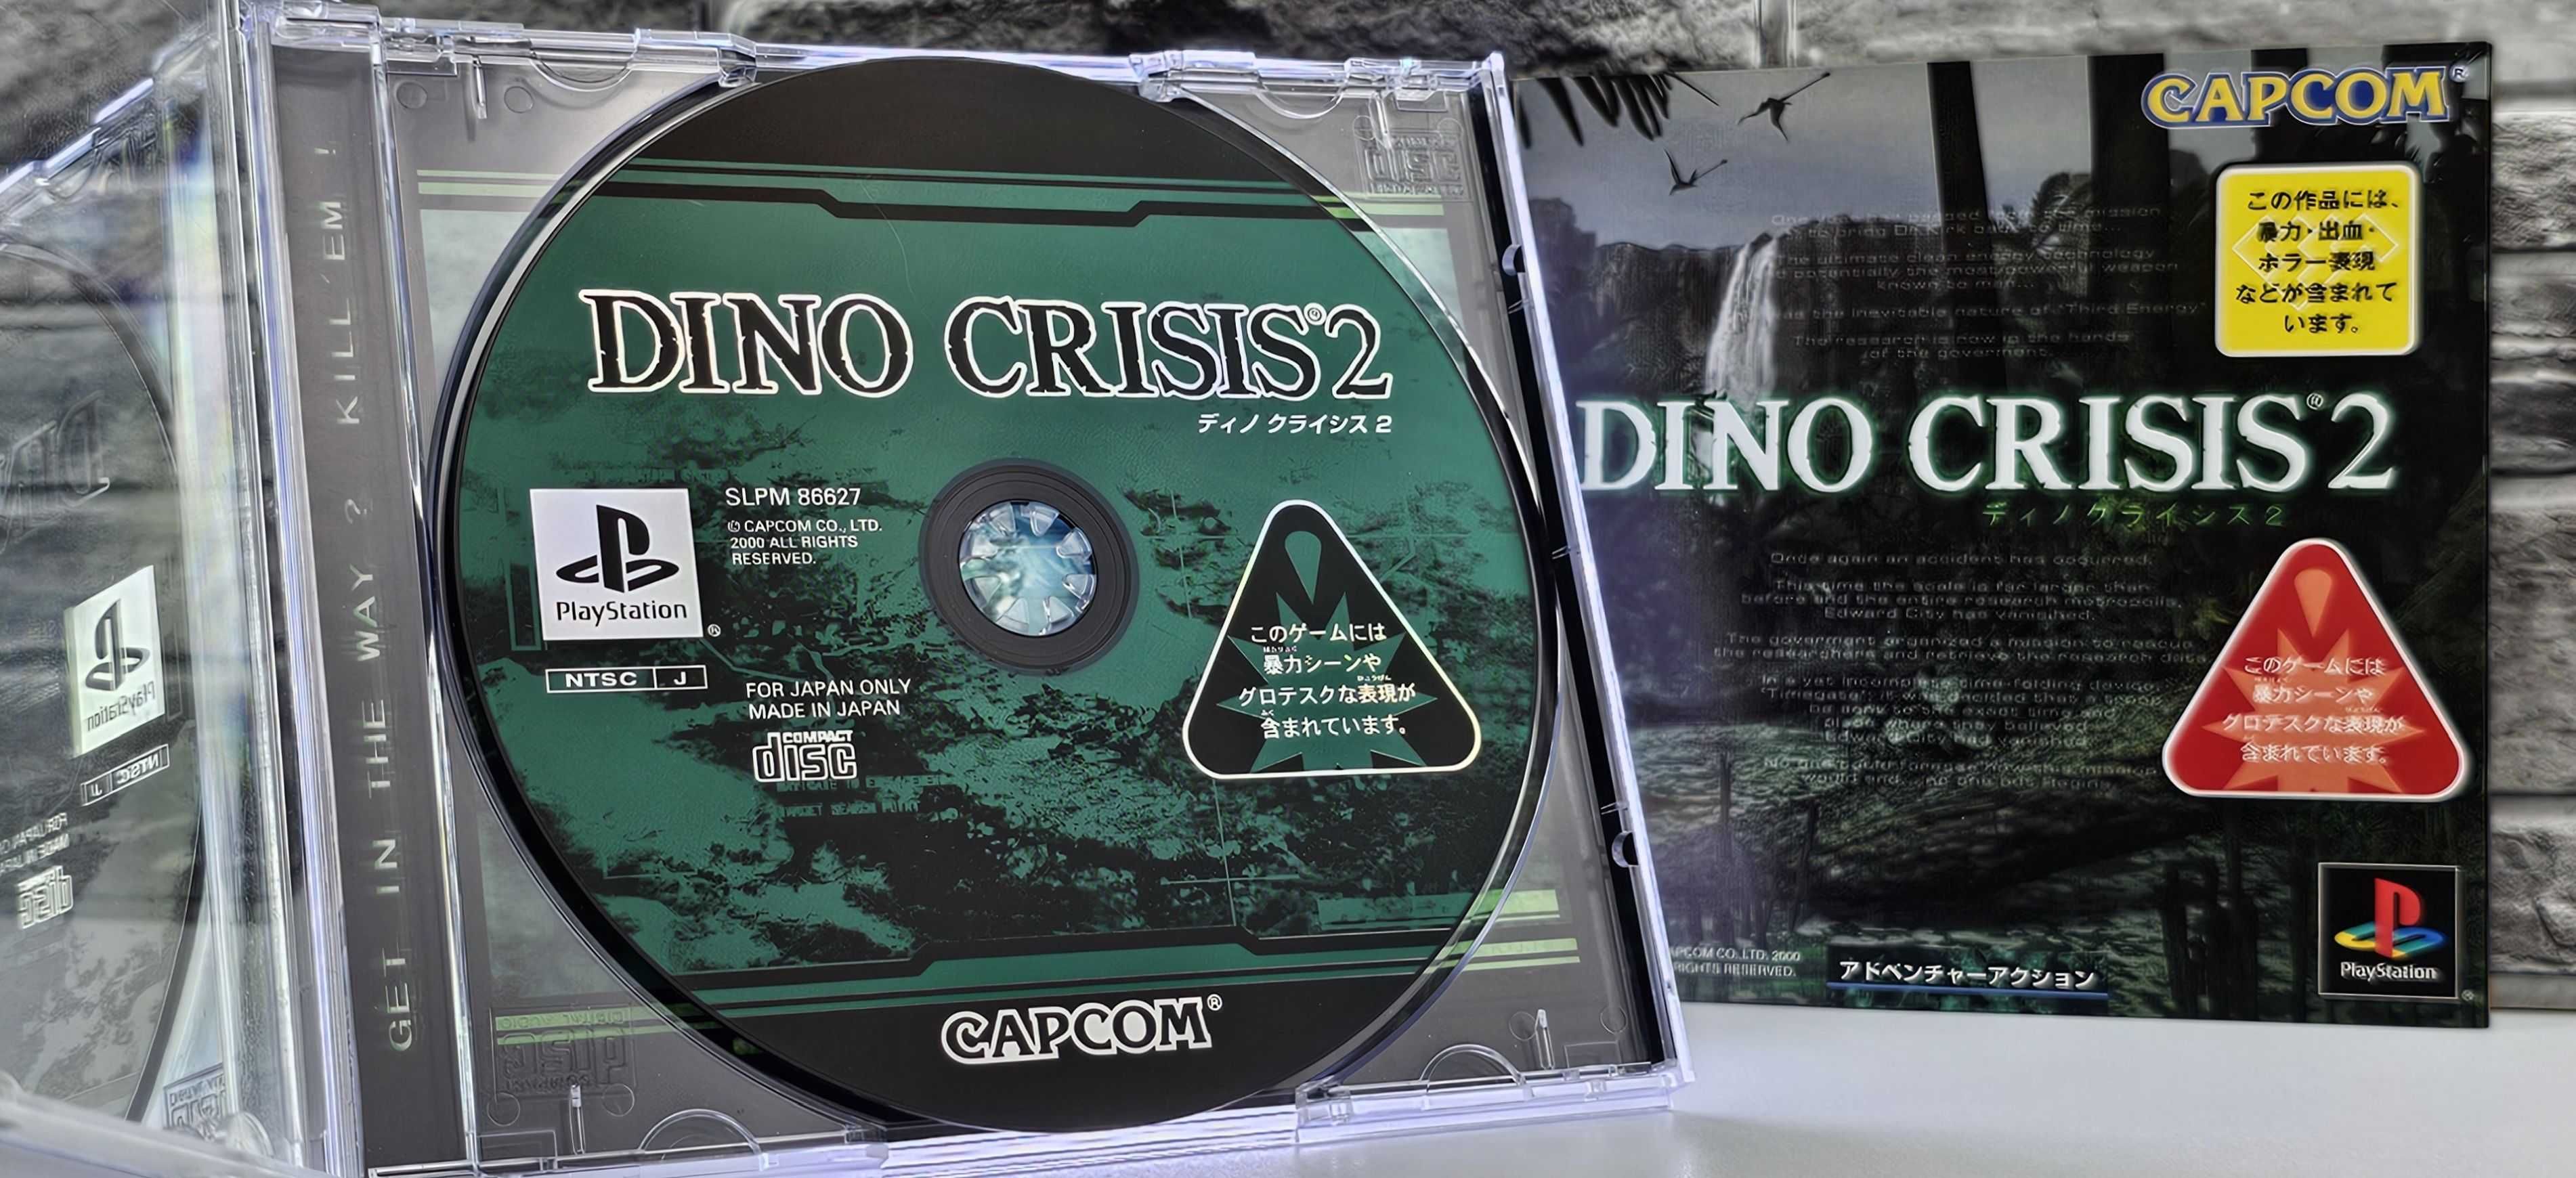 Playstation Dino Crisis 2